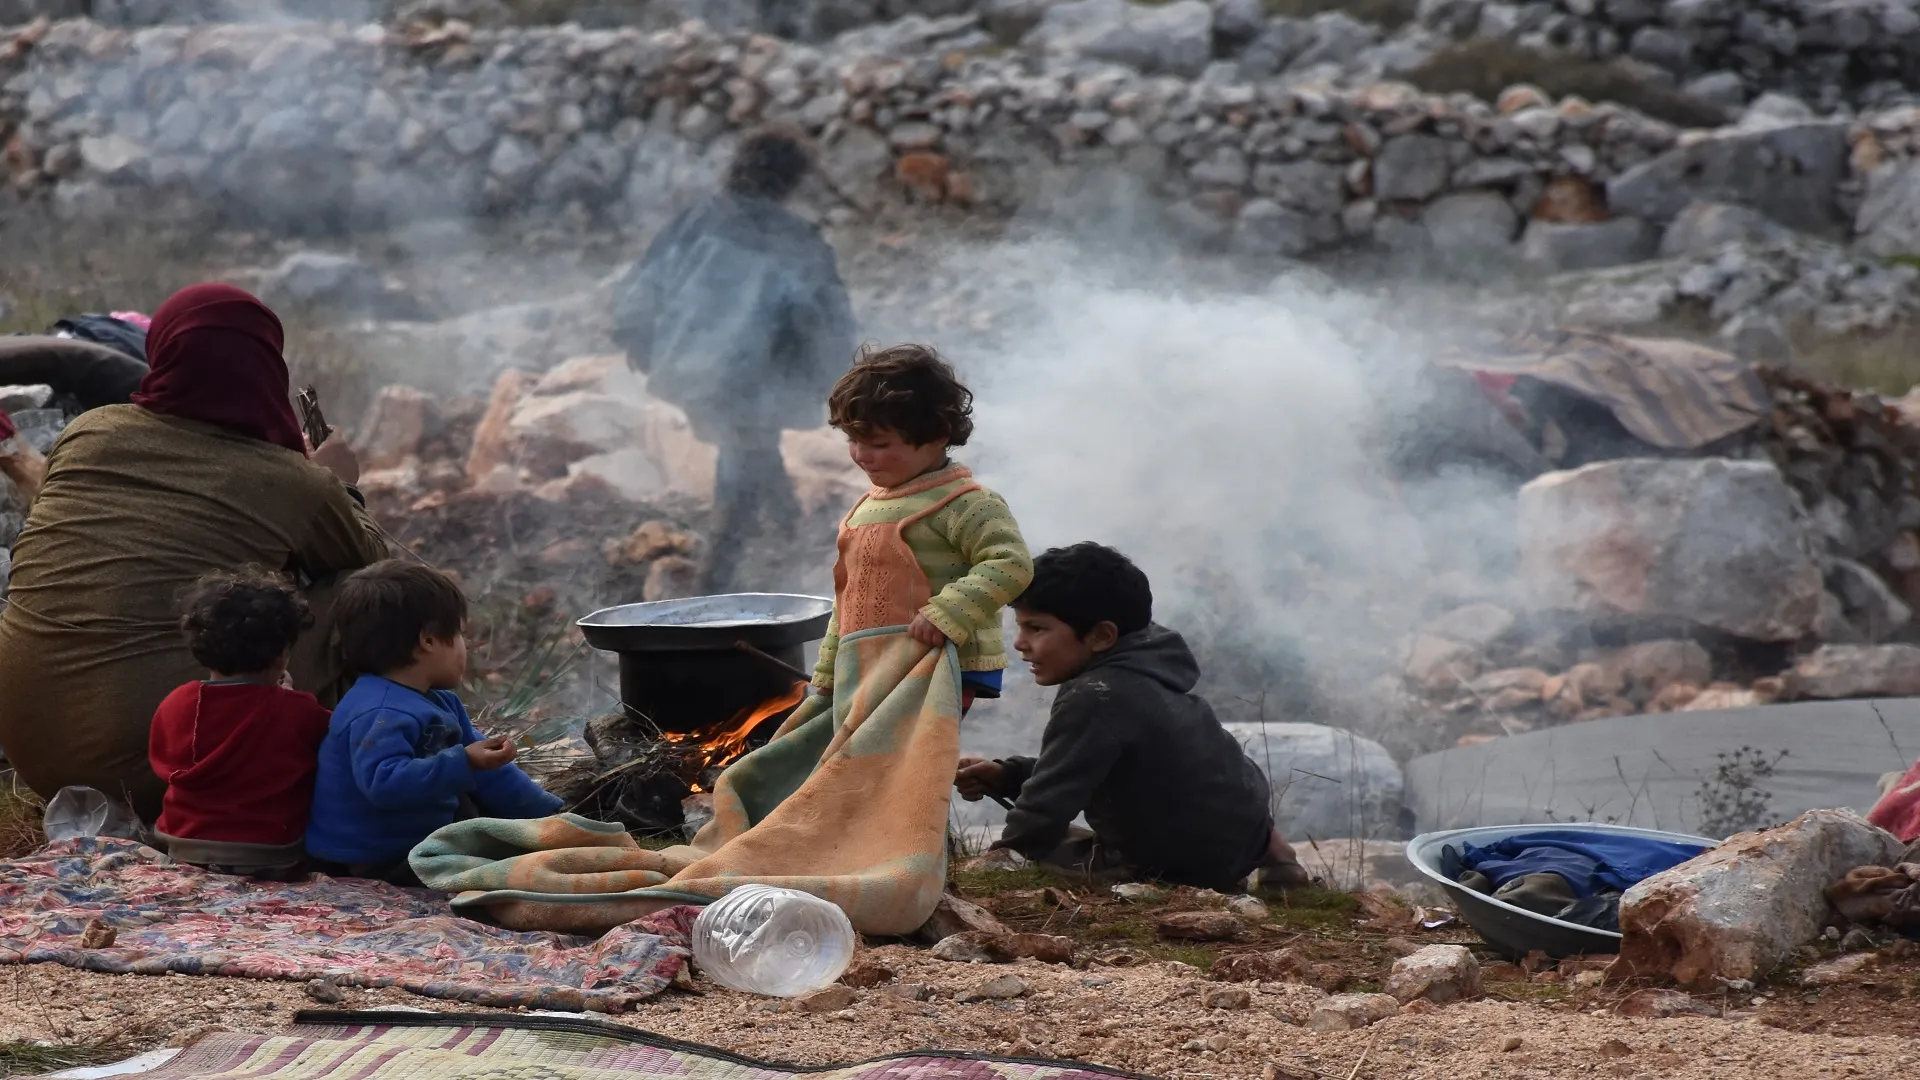 "استجابة سوريا" يرصد ارتفاع سعر السلة الغذائية للأسرة إلى 88 دولار أمريكي 